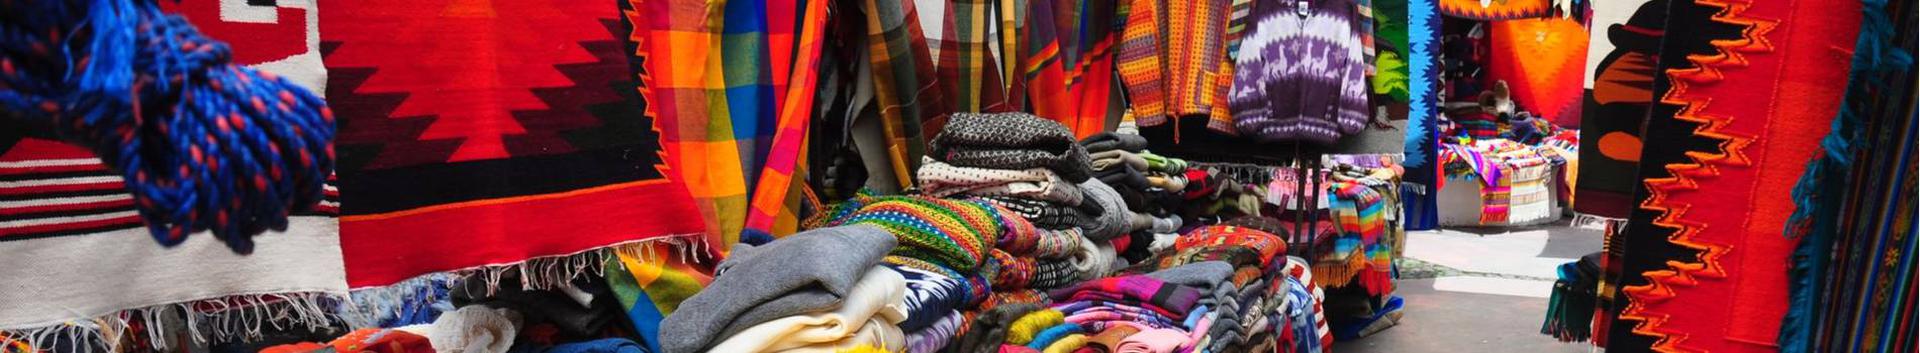 Suurim mainega ettevõte LYUDMILA LEONTEVA FIE, maineskoor 180, aktiivseid äriseoseid 1. Tegutseb peamiselt valdkonnas: Tekstiili, rõivaste jaemüük.